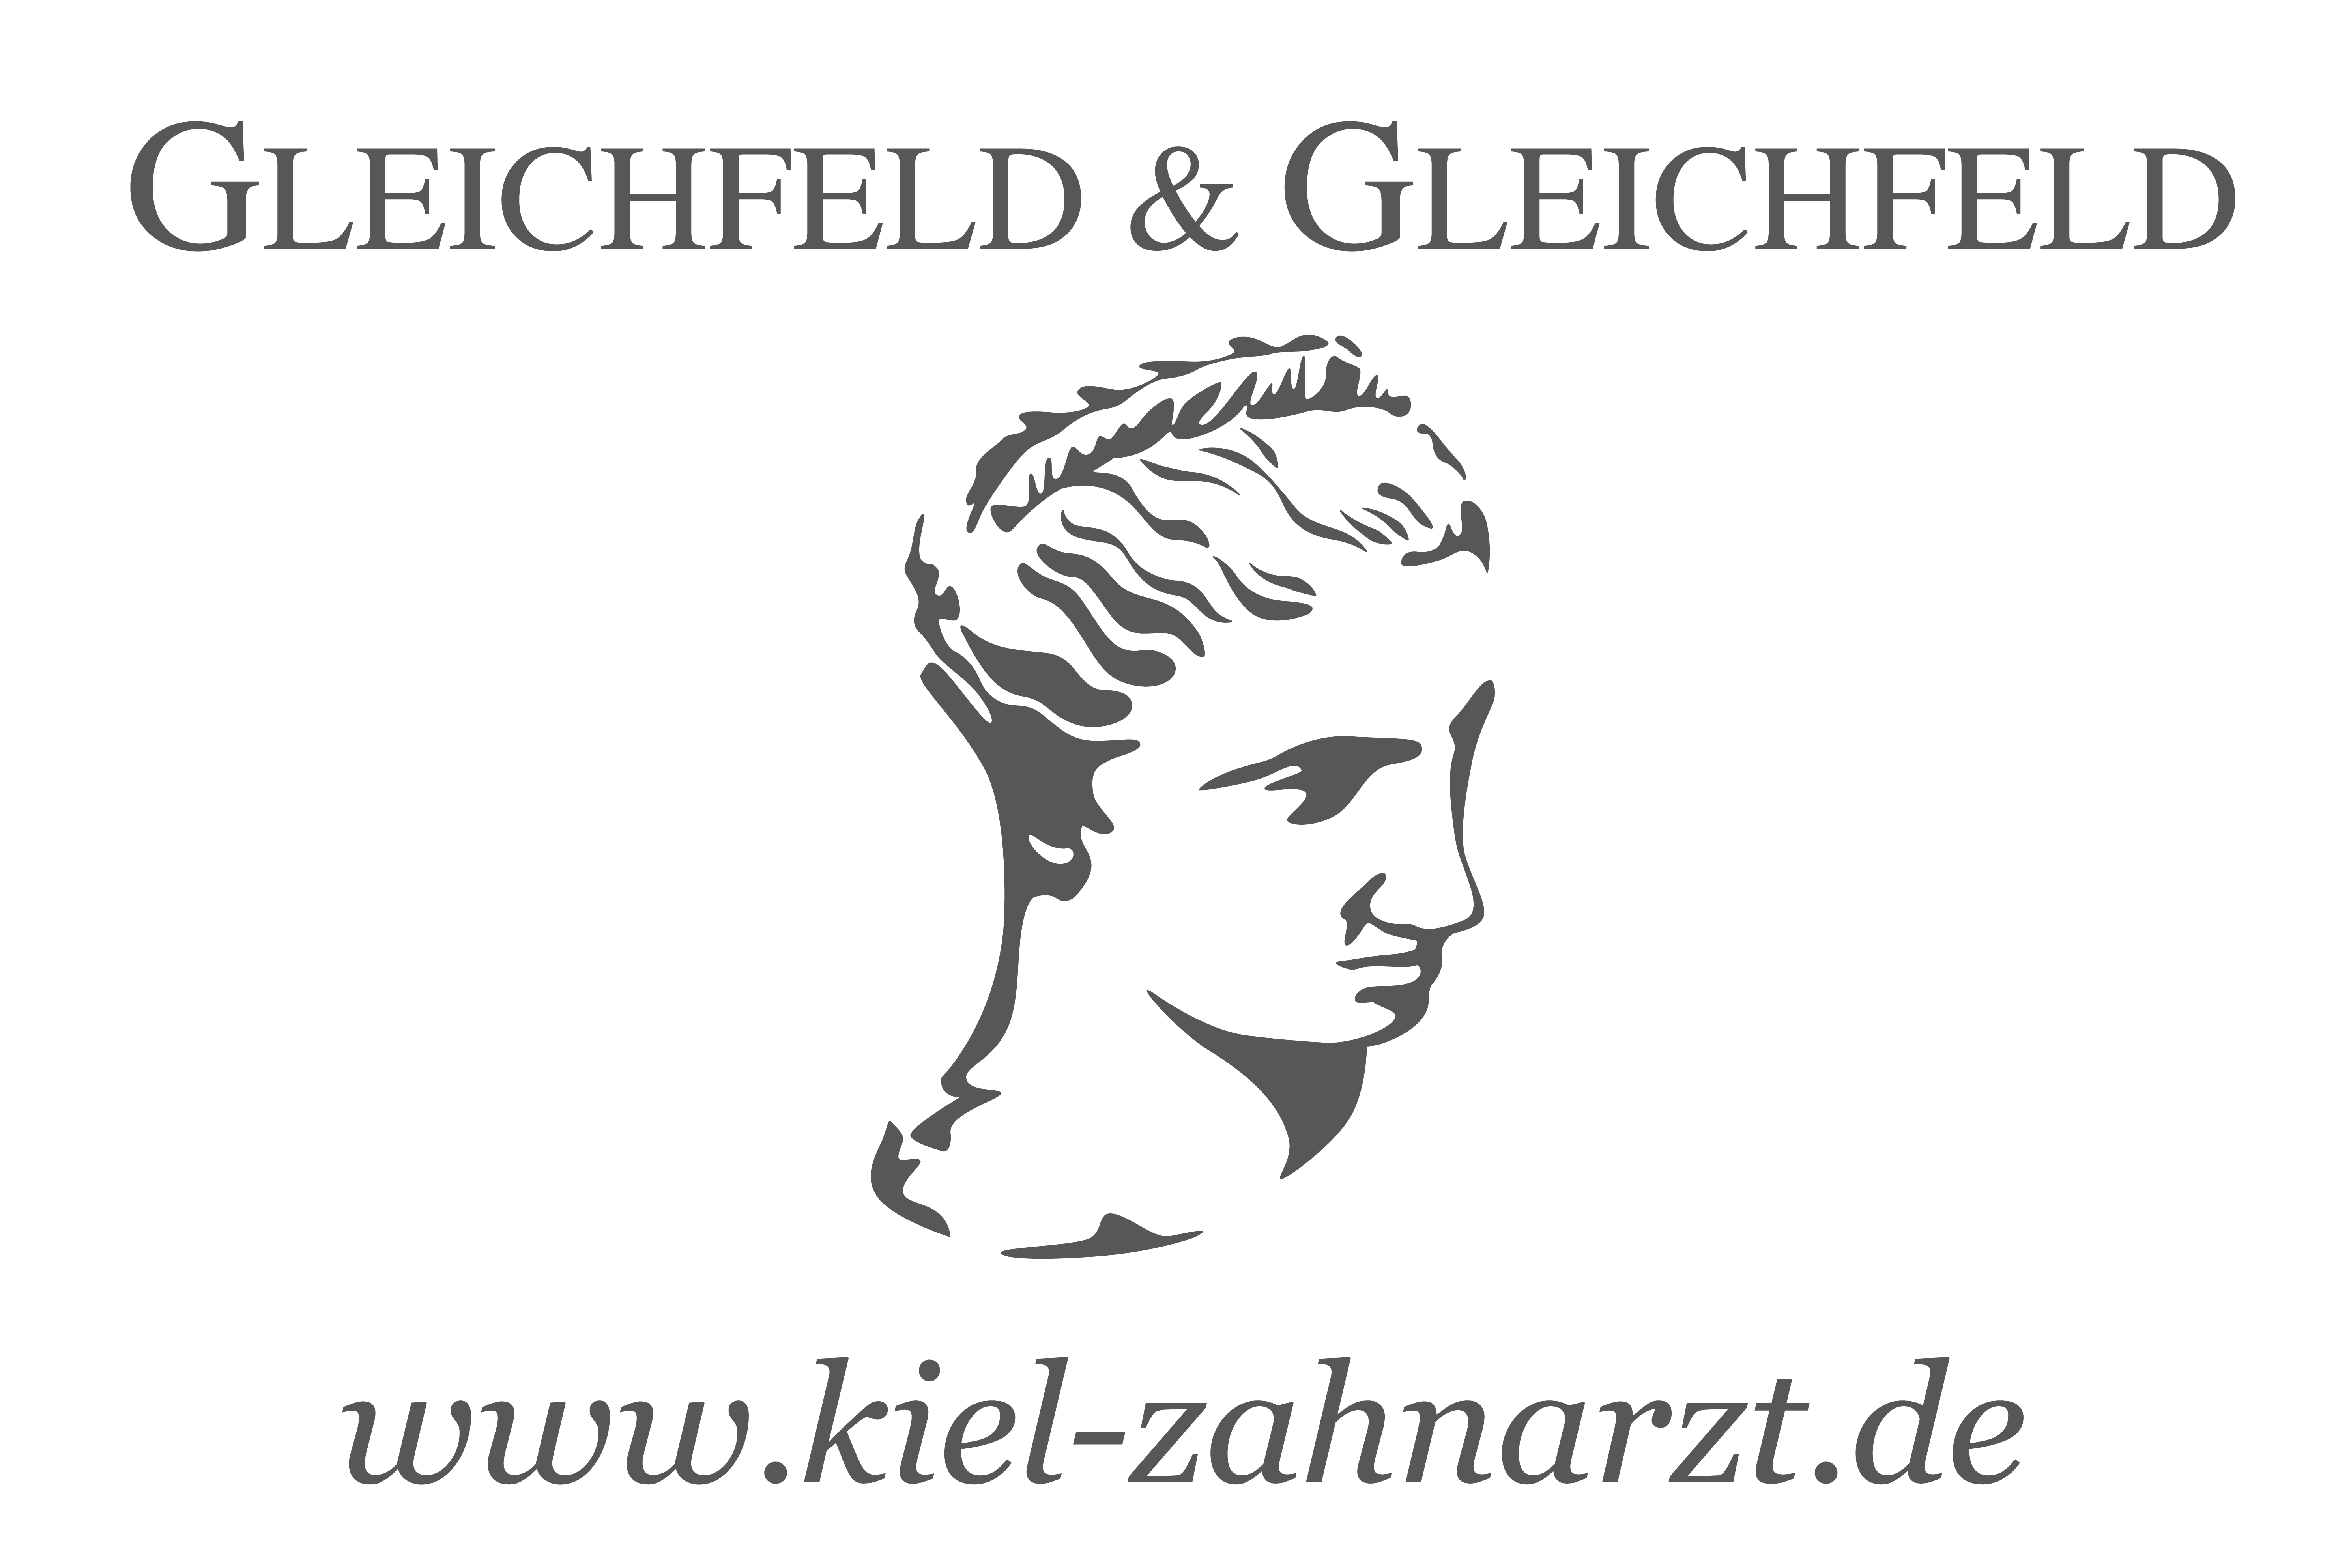 Gleichfeld